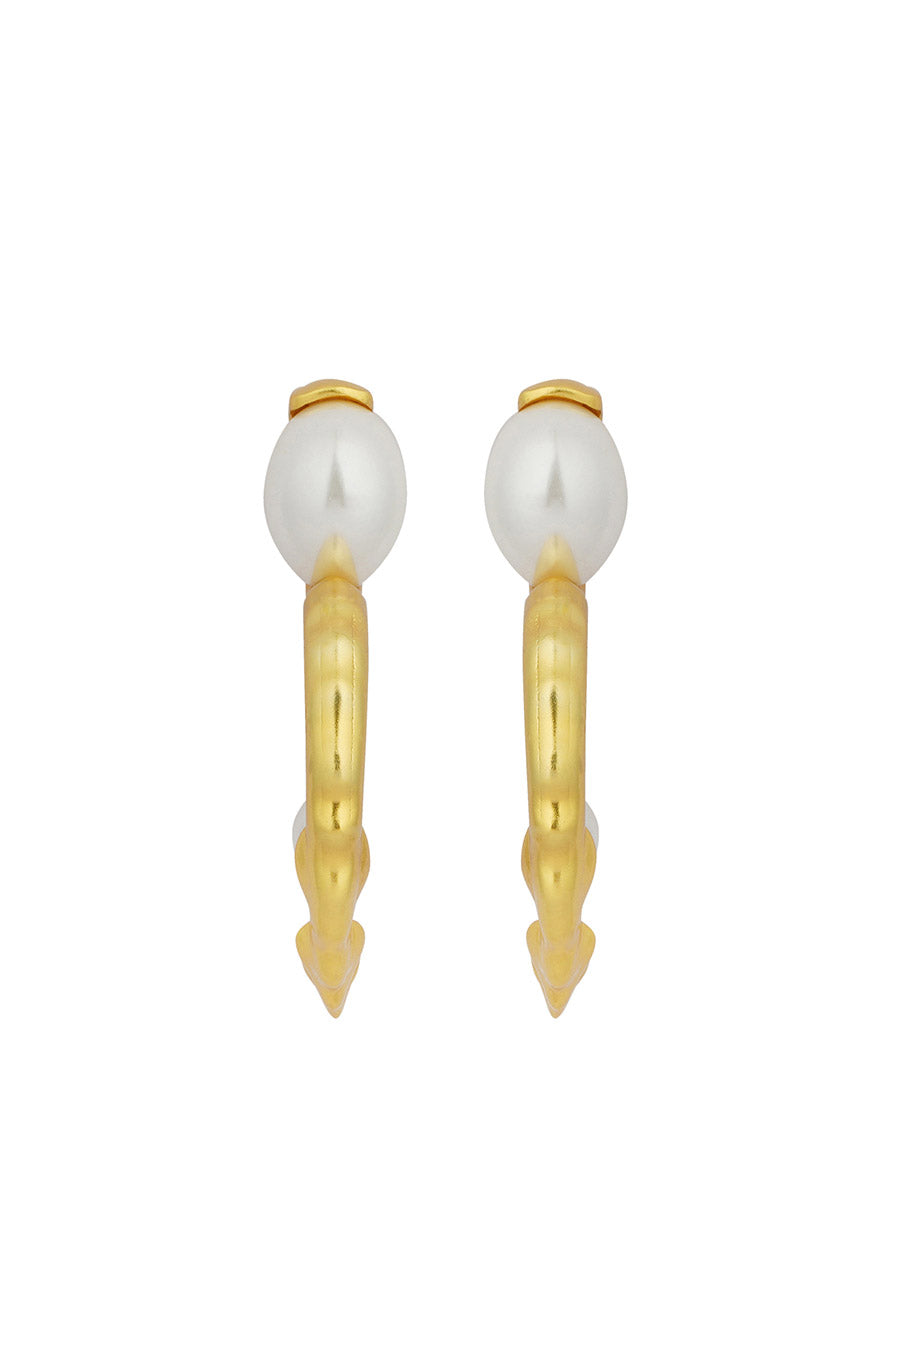 Sassy Achiever - Pearl Hoops Earrings